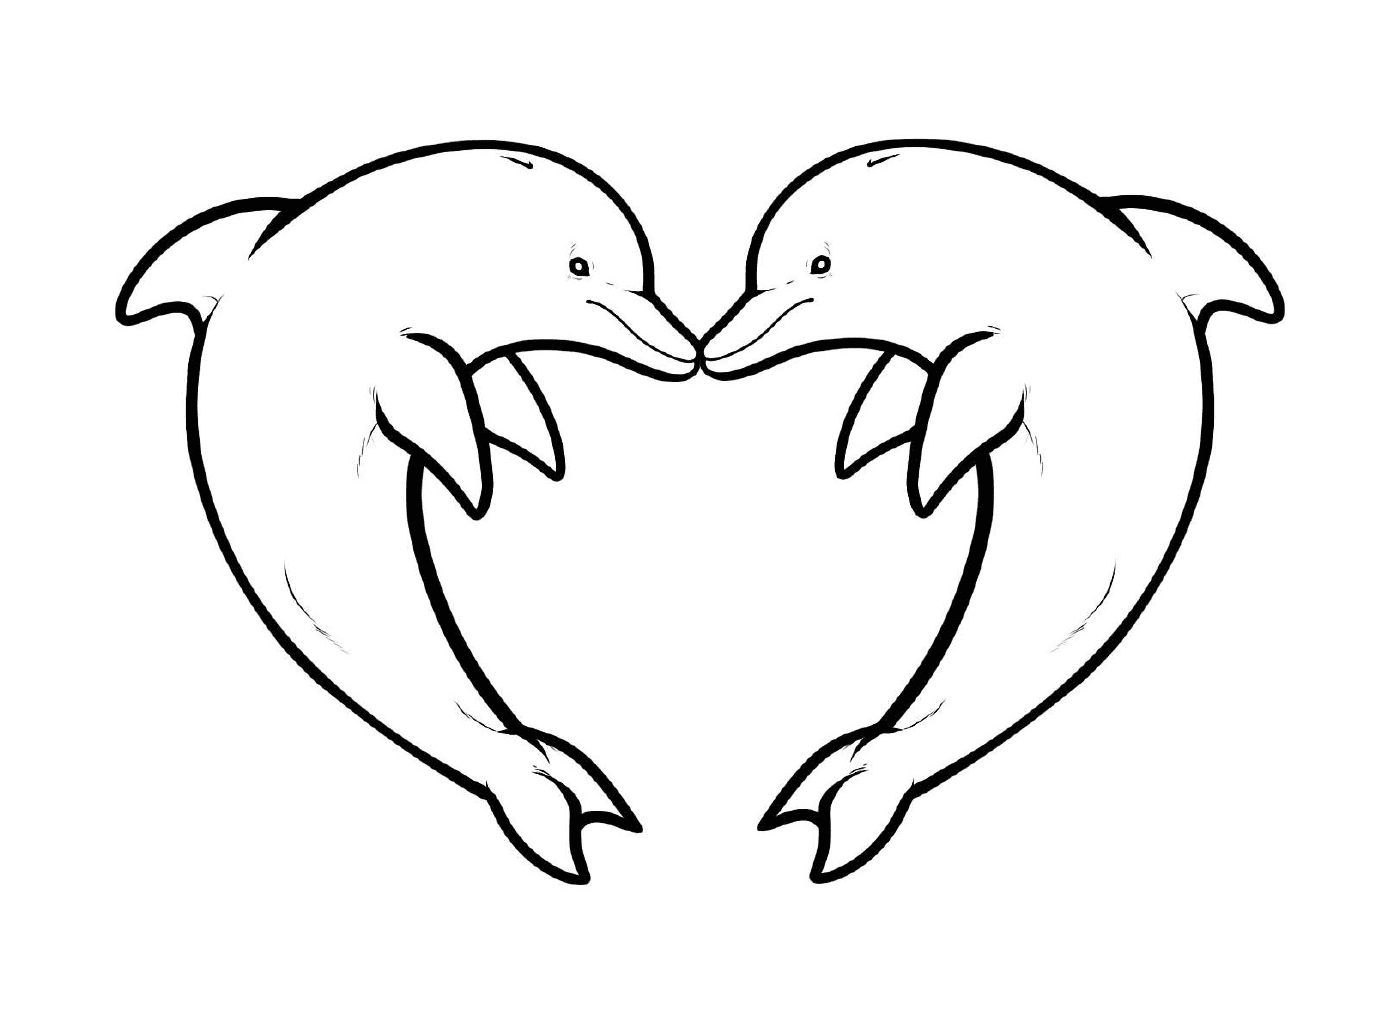  दो डॉल्फ़िन एक दिल का आकार बनाती हैं 